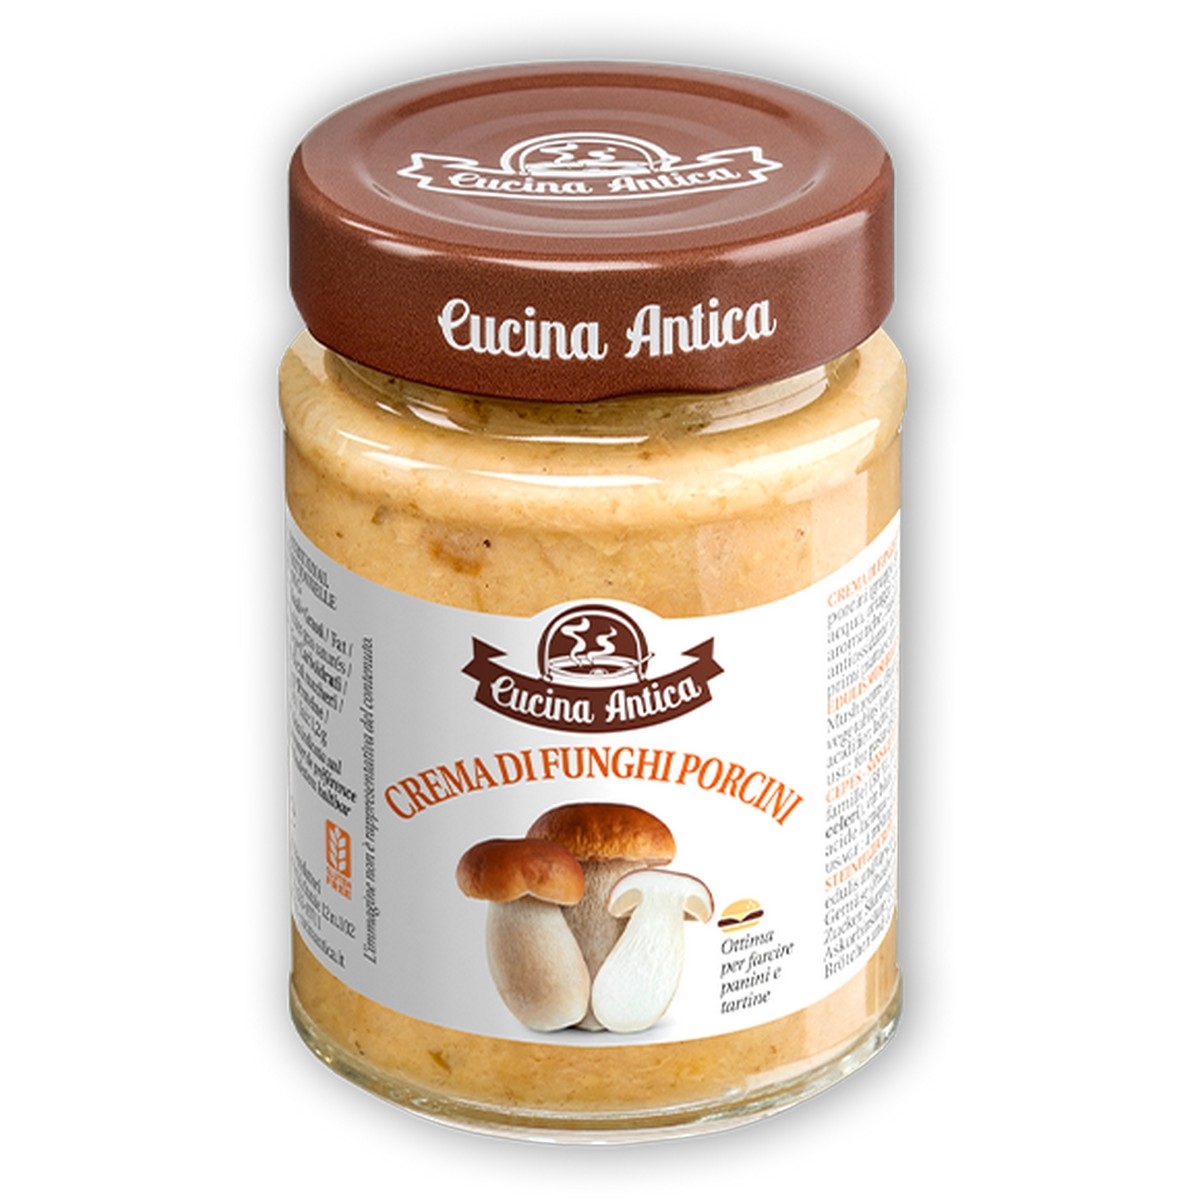 porcini mushroom cream - 180 g